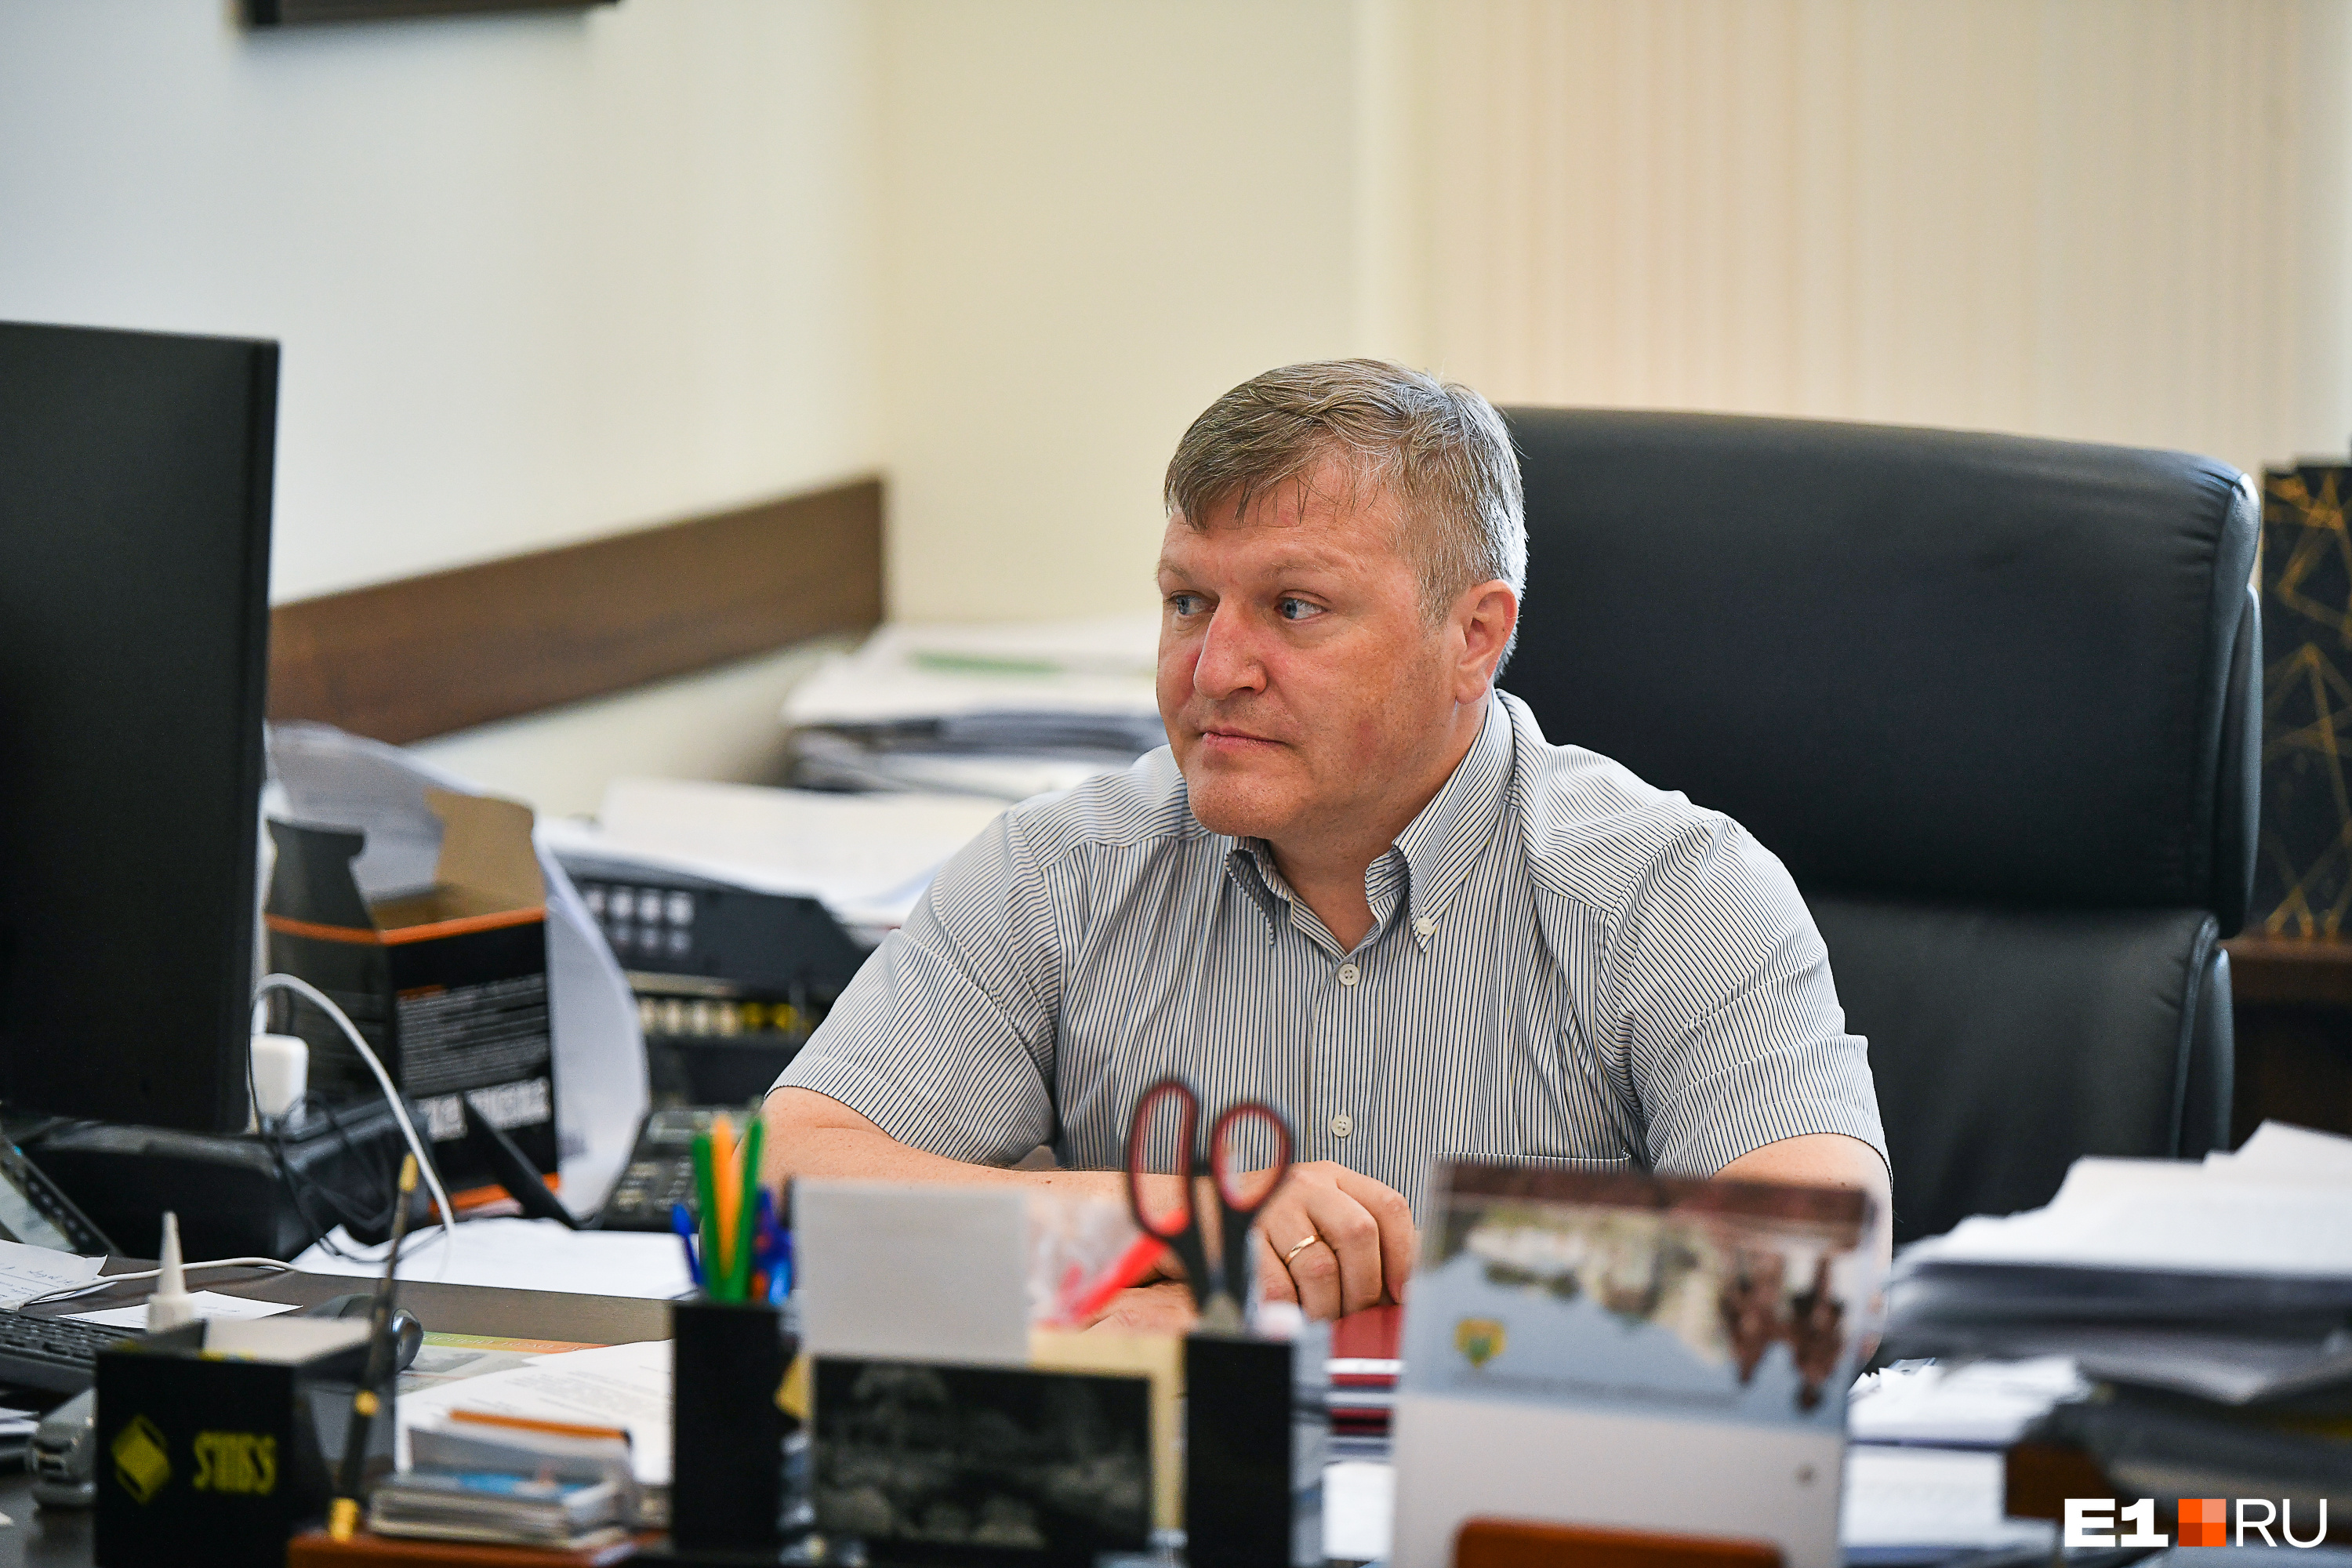 Вице-мэр Алексей Бубнов заявил, что с сентября 2021 года система платных парковок железно заработает. Или это очередное обещание?